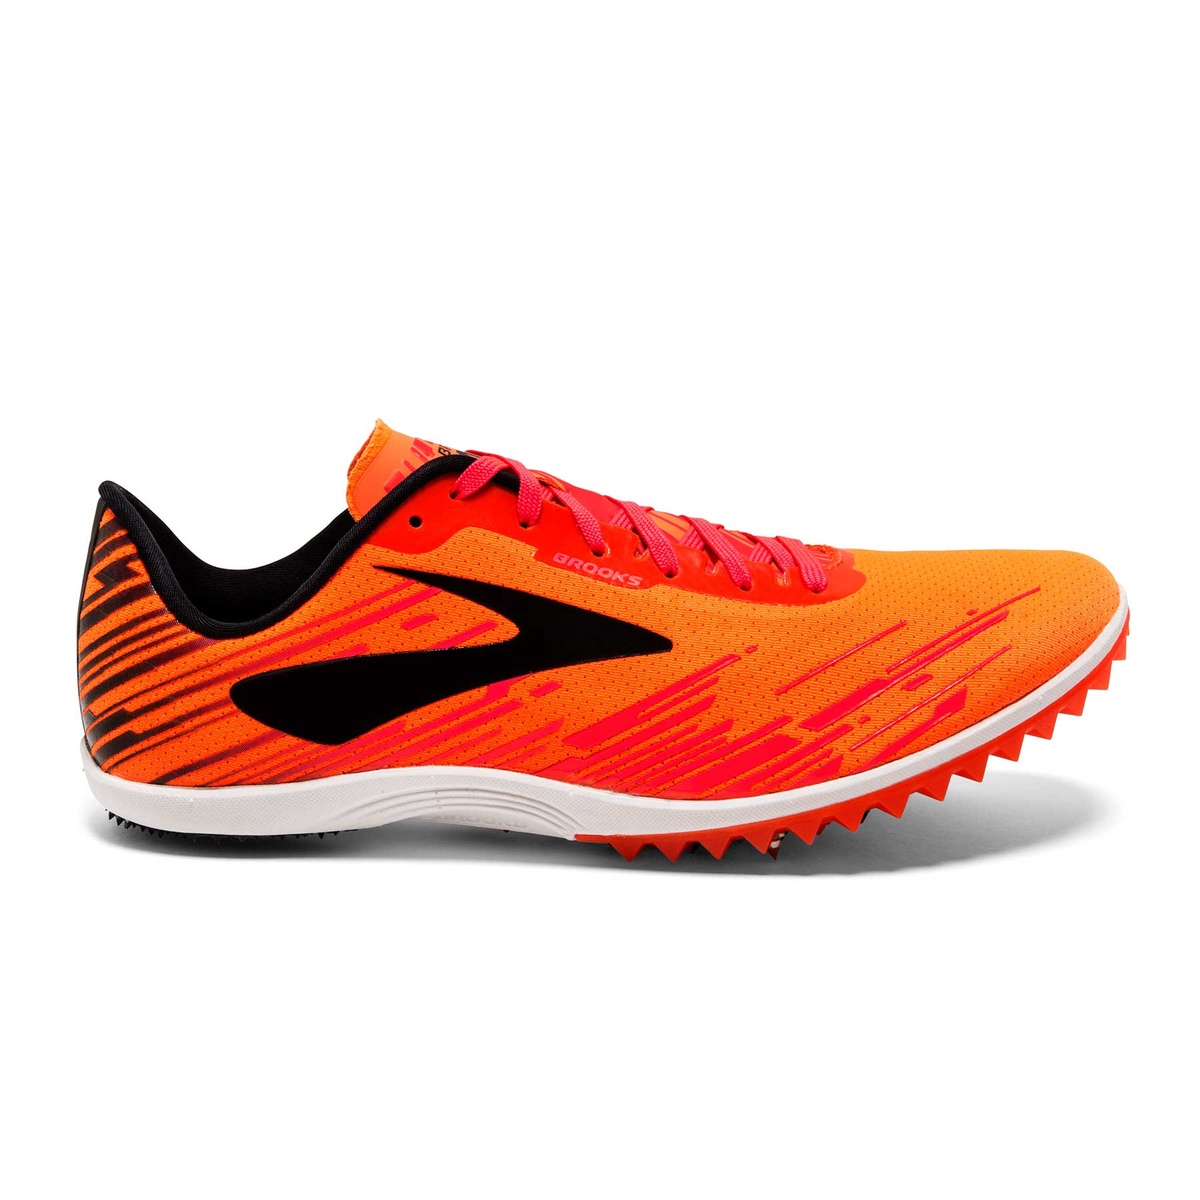 Outlet di scarpe da running Maxi Sport Brooks economiche - Offerte per  acquistare online | Runnea